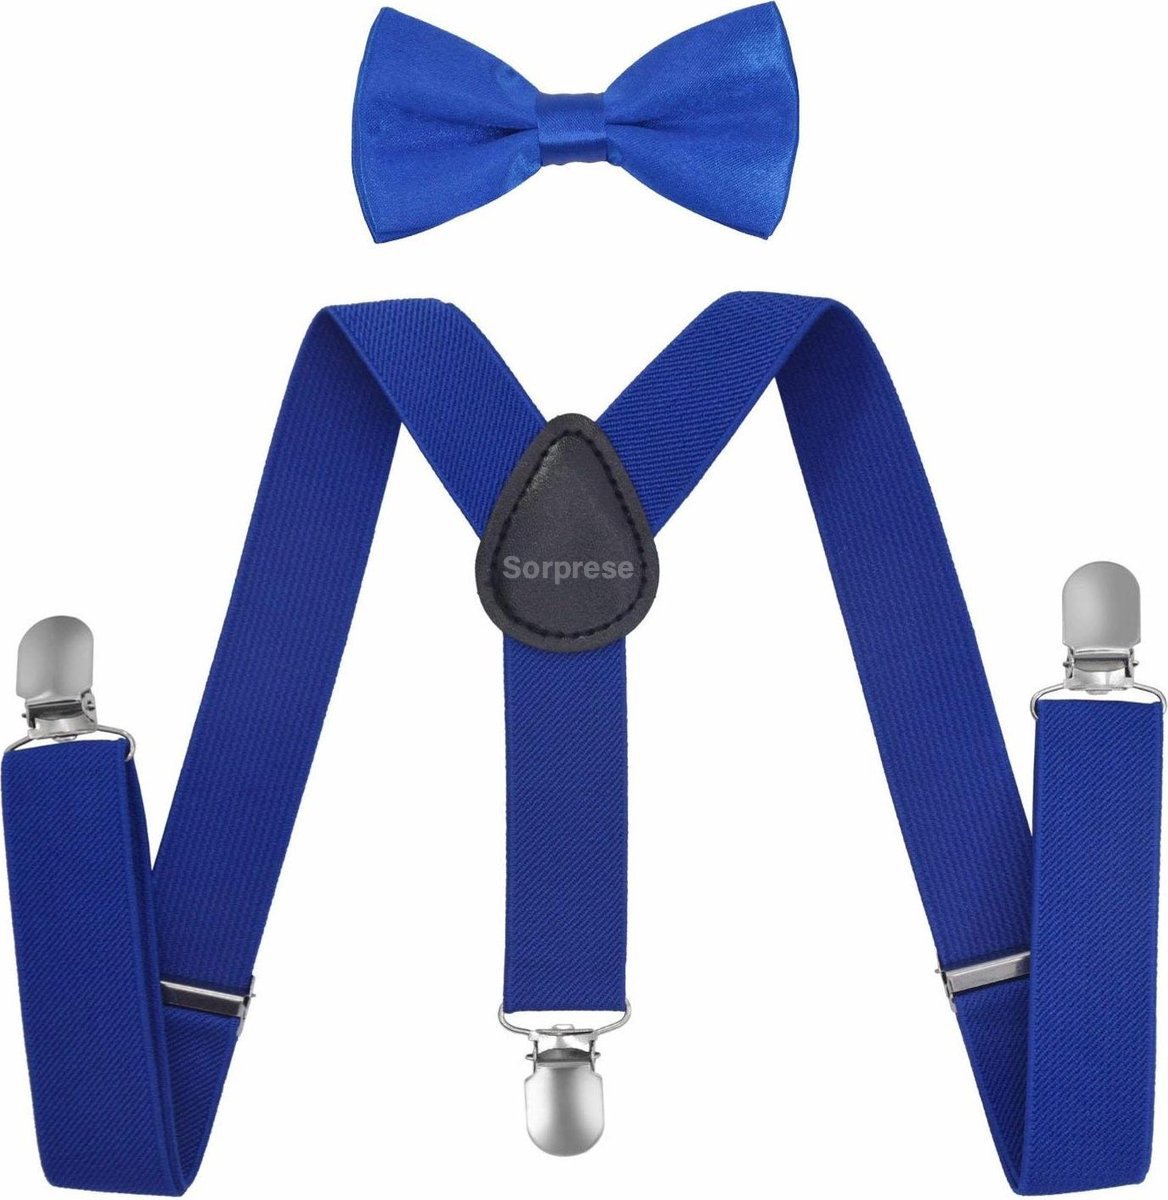 Sorprese - Kinder Bretels Inclusief Vlinderdas - Royal Blue - Effen - 65cm - Bretels Kind - Vlinderstrik Kind